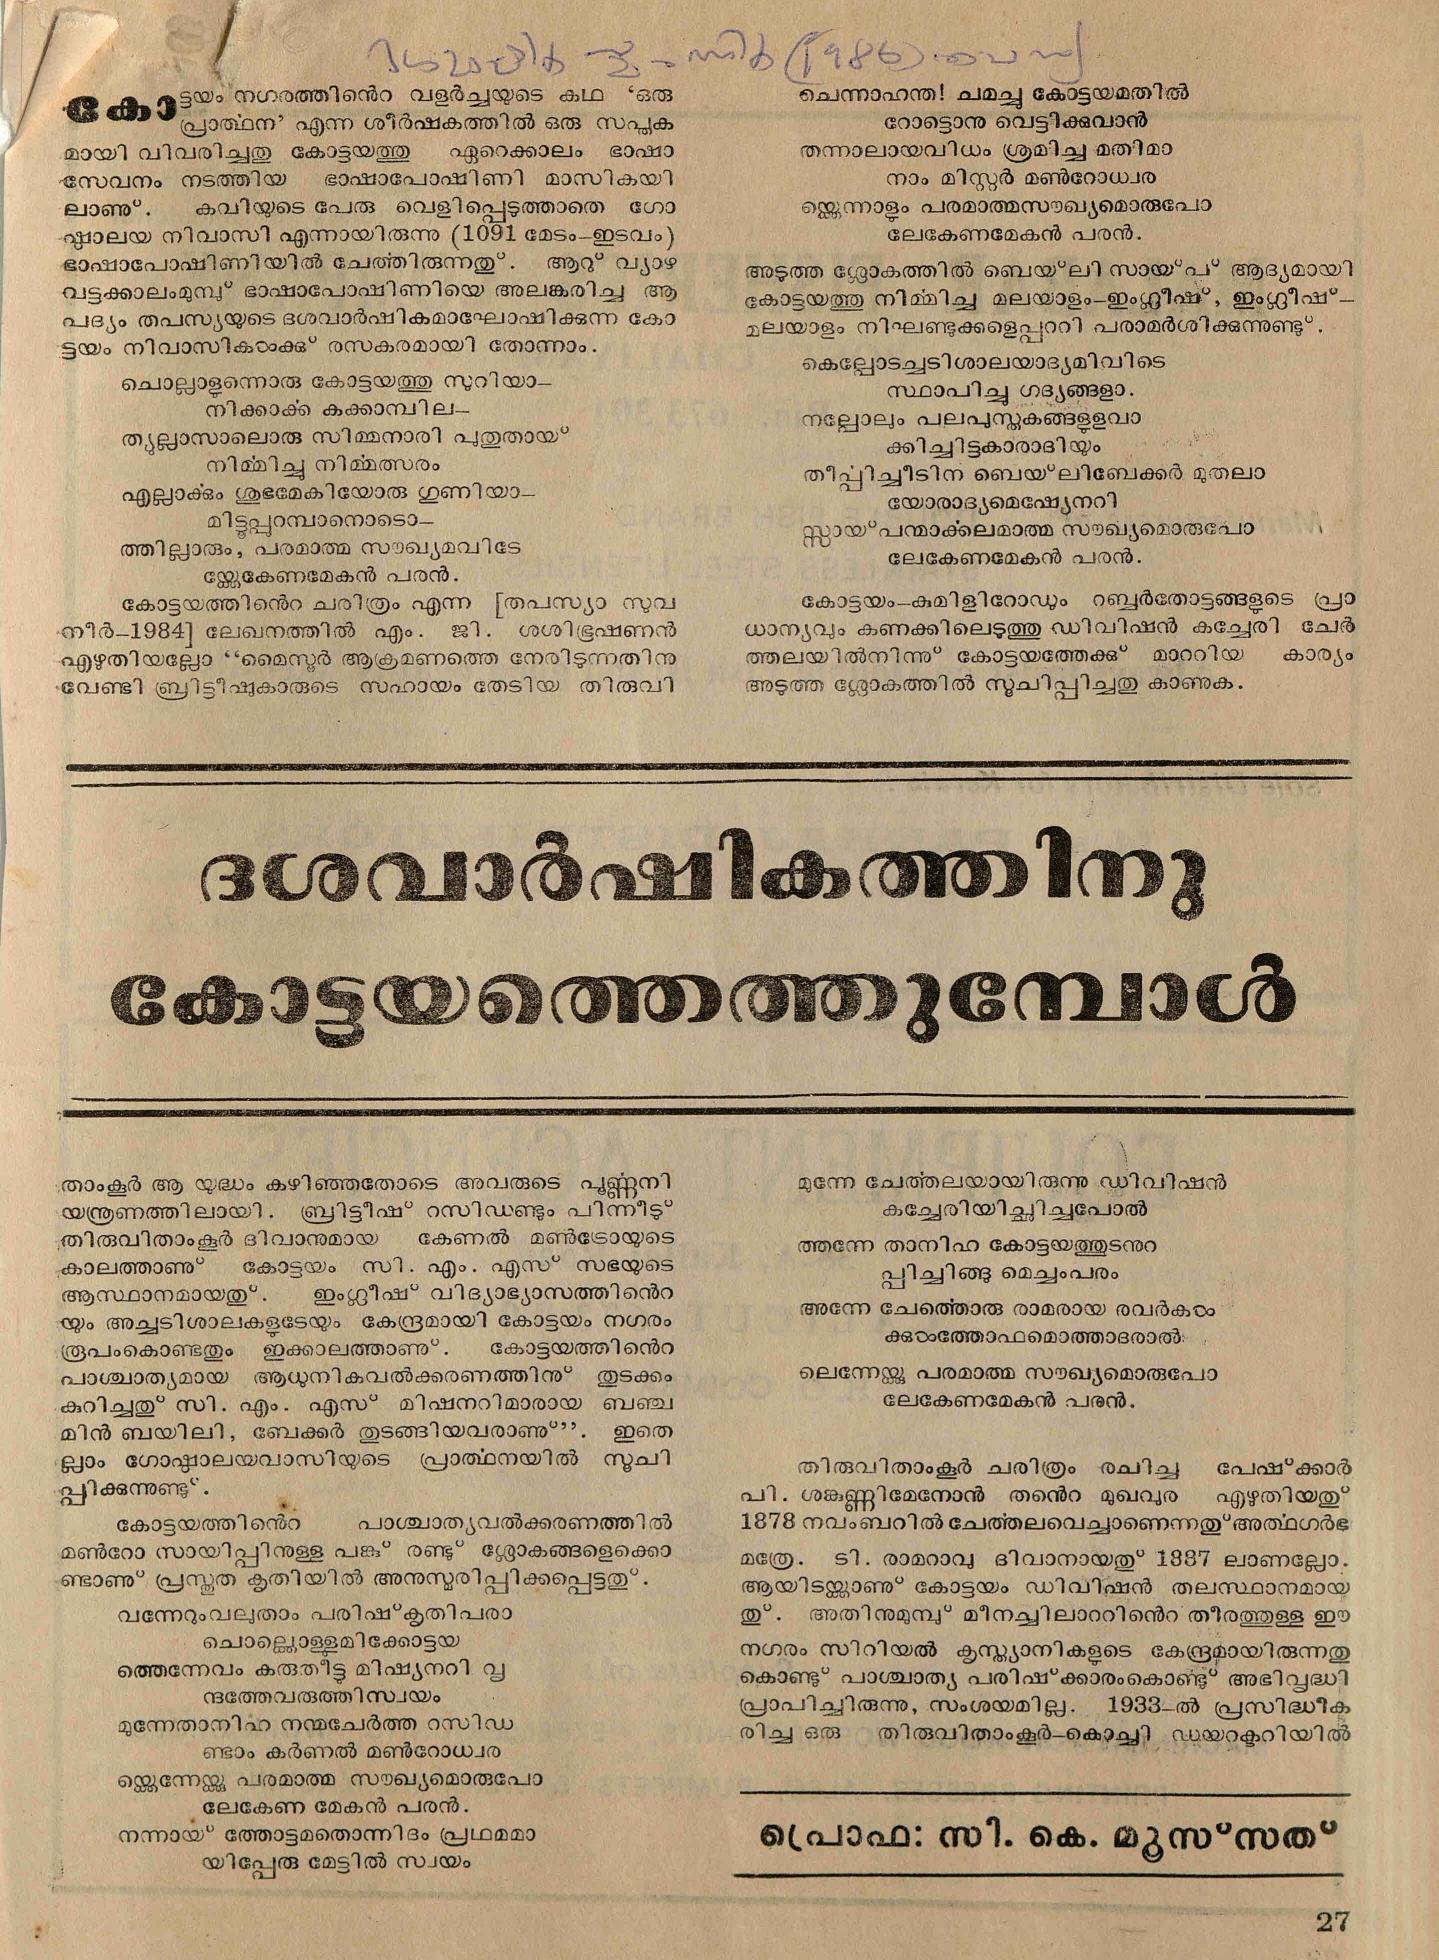  1986 - ദശവാർഷികത്തിന് കോട്ടയത്തെത്തുമ്പോൾ - സി. കെ. മൂസ്സത്